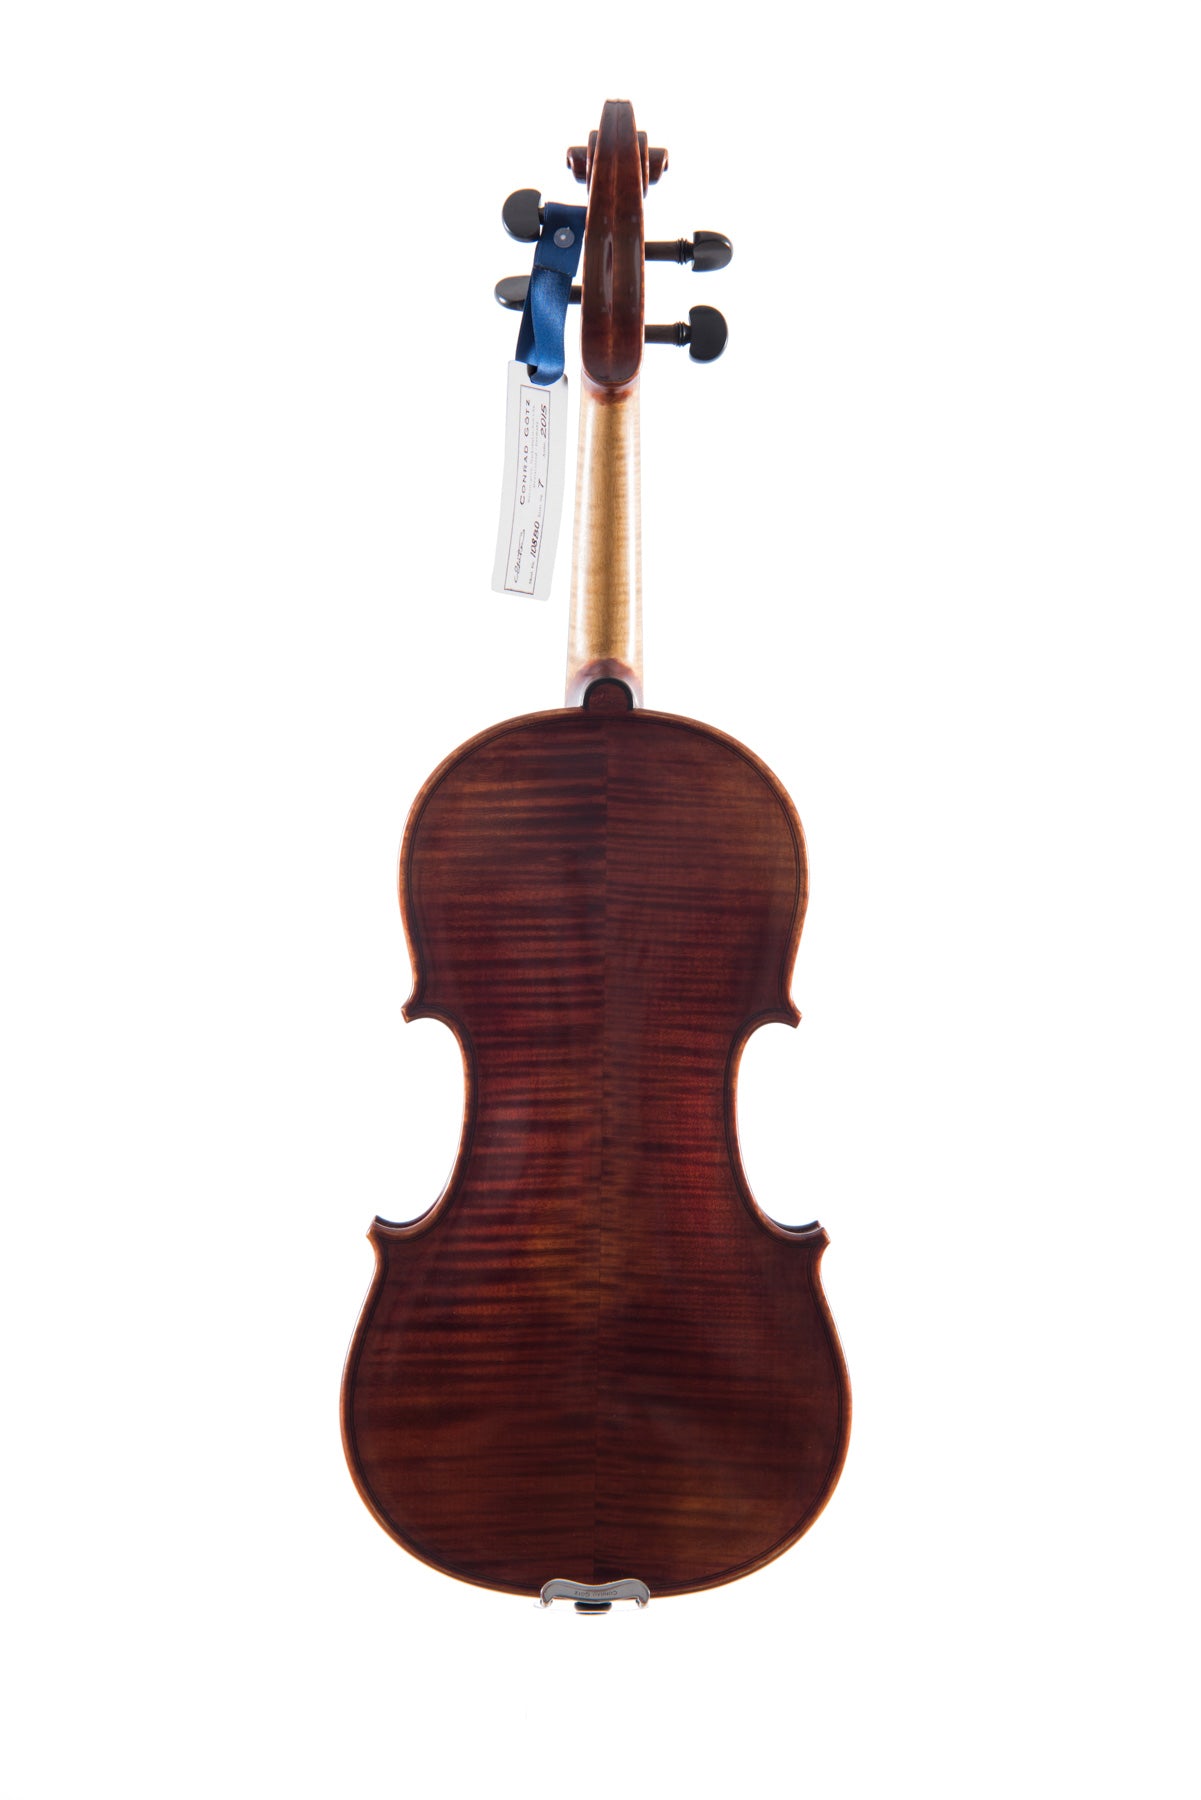 BOHEMIA Violin #108 BO